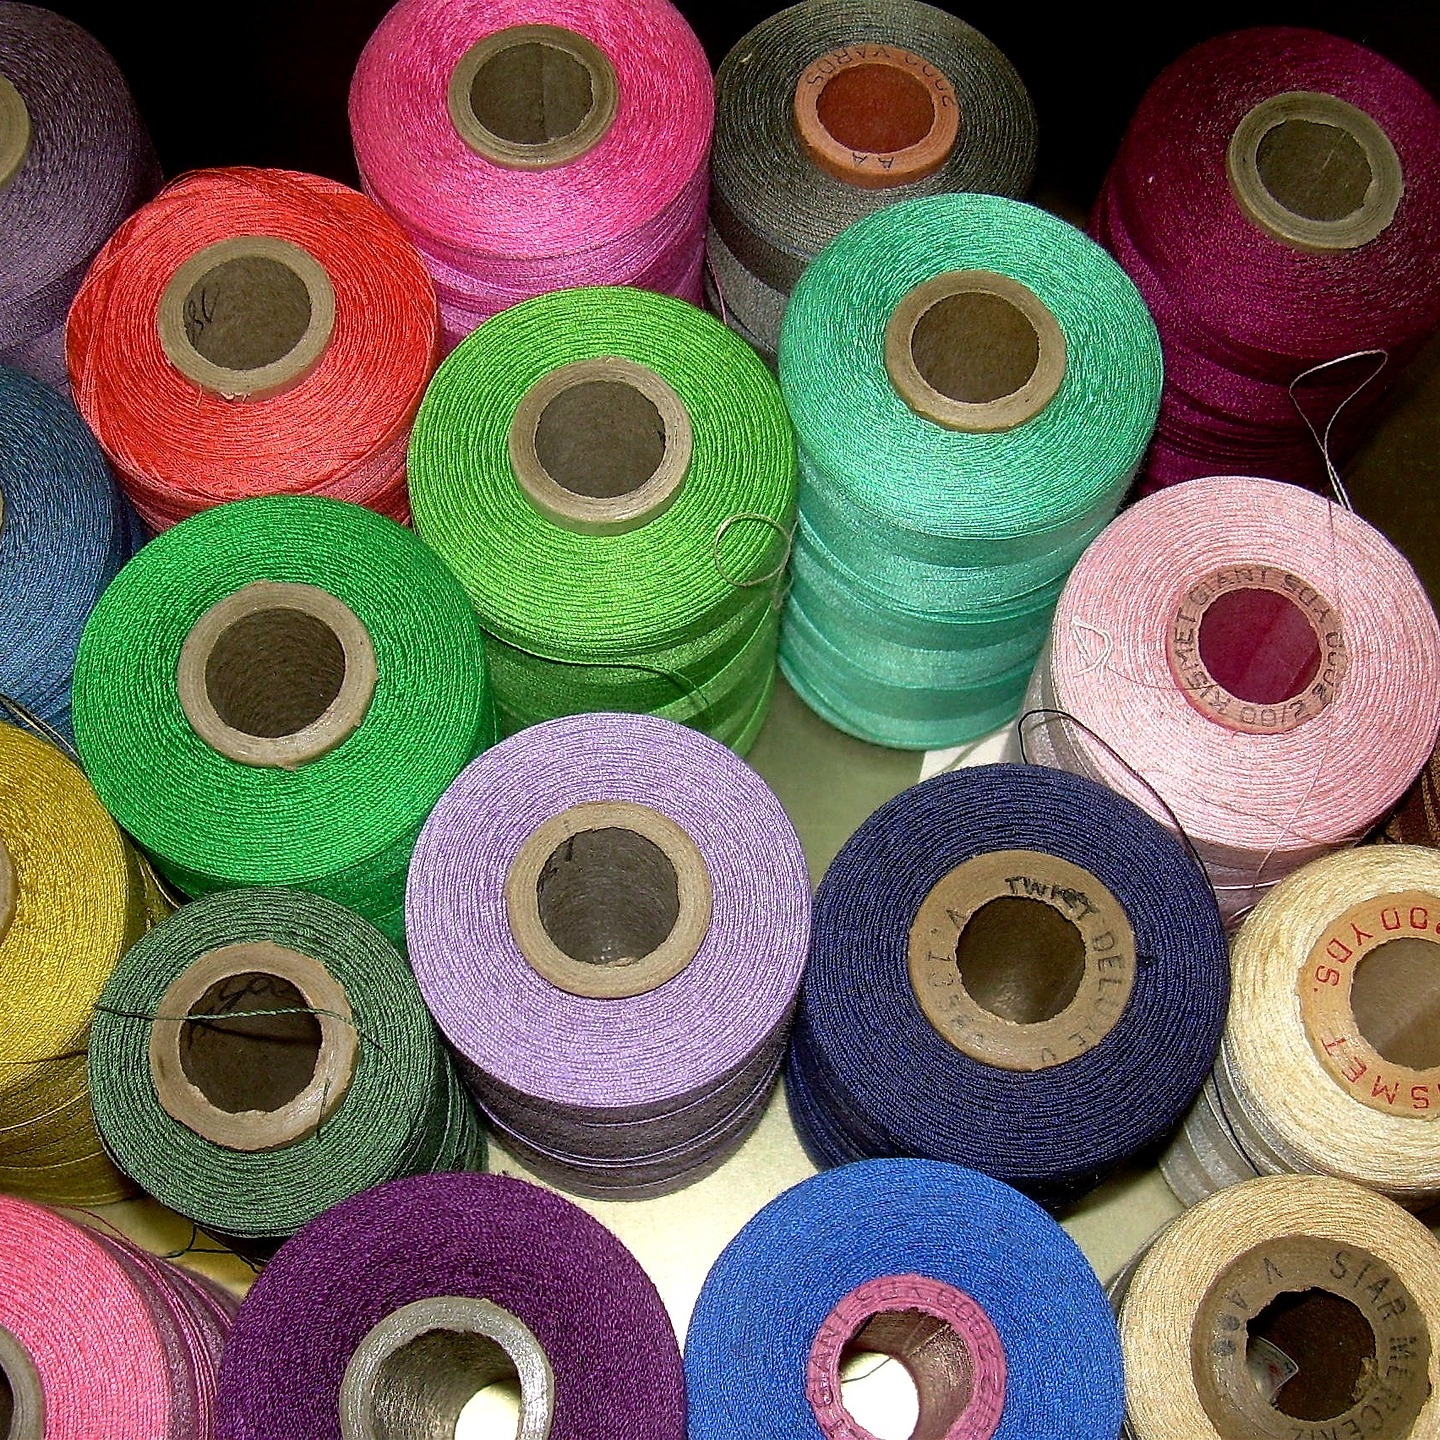 Taller de Costura: Descubre la fascinante historia sobre la costura, corte y confección textil. El taller de costura y su historia.